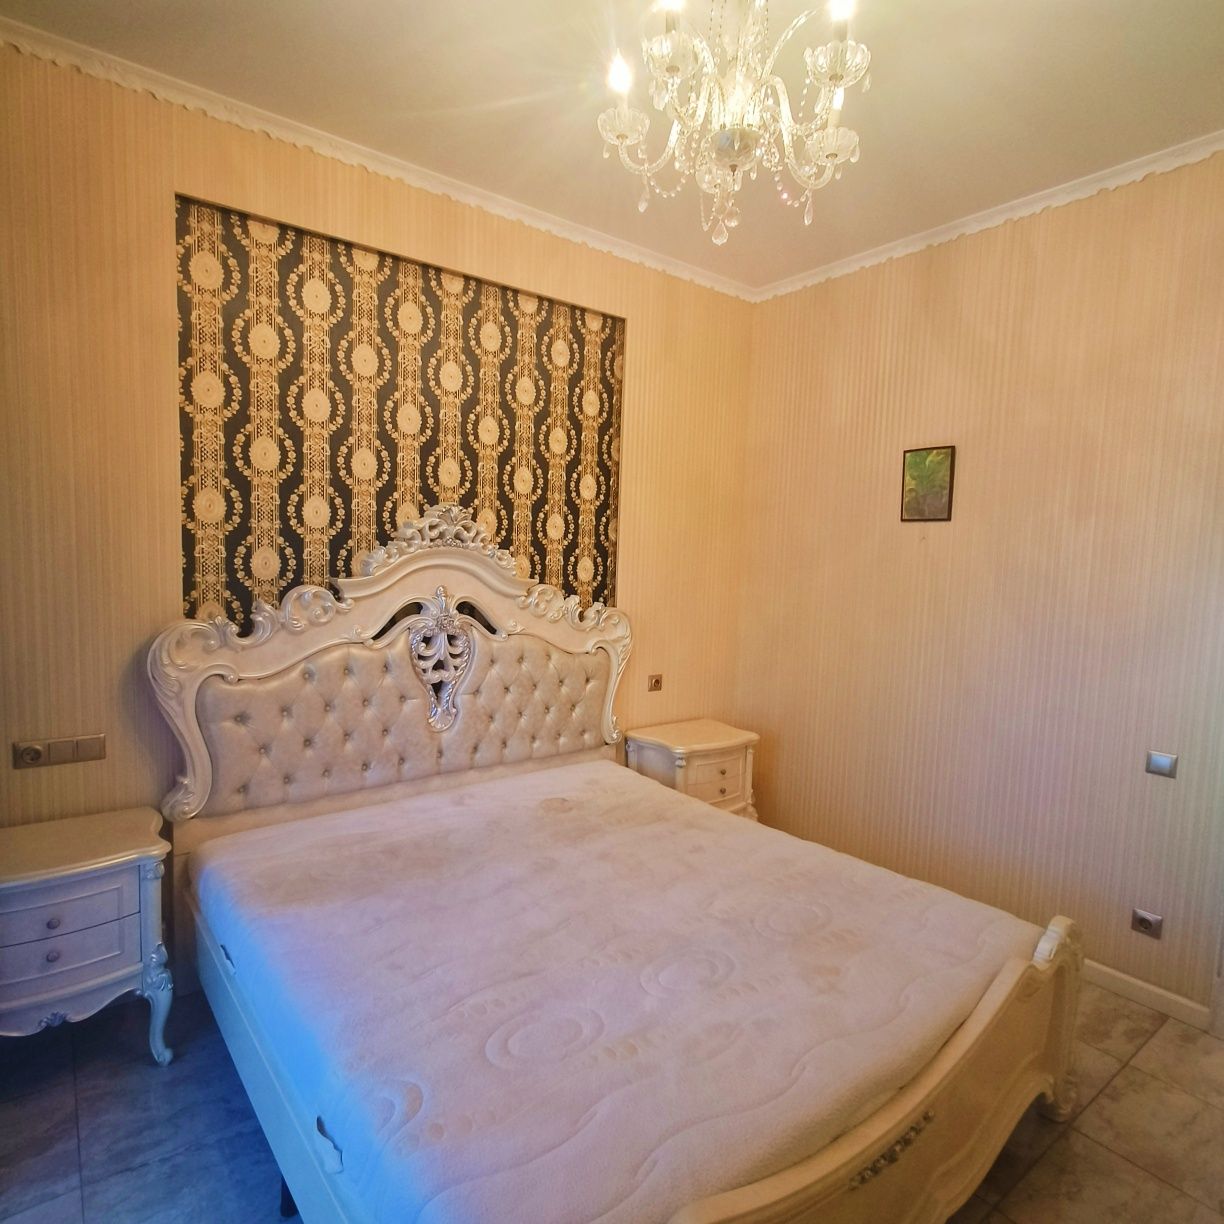 Продаётся двухуровневая квартира в Таунхаусе в Приднепровске